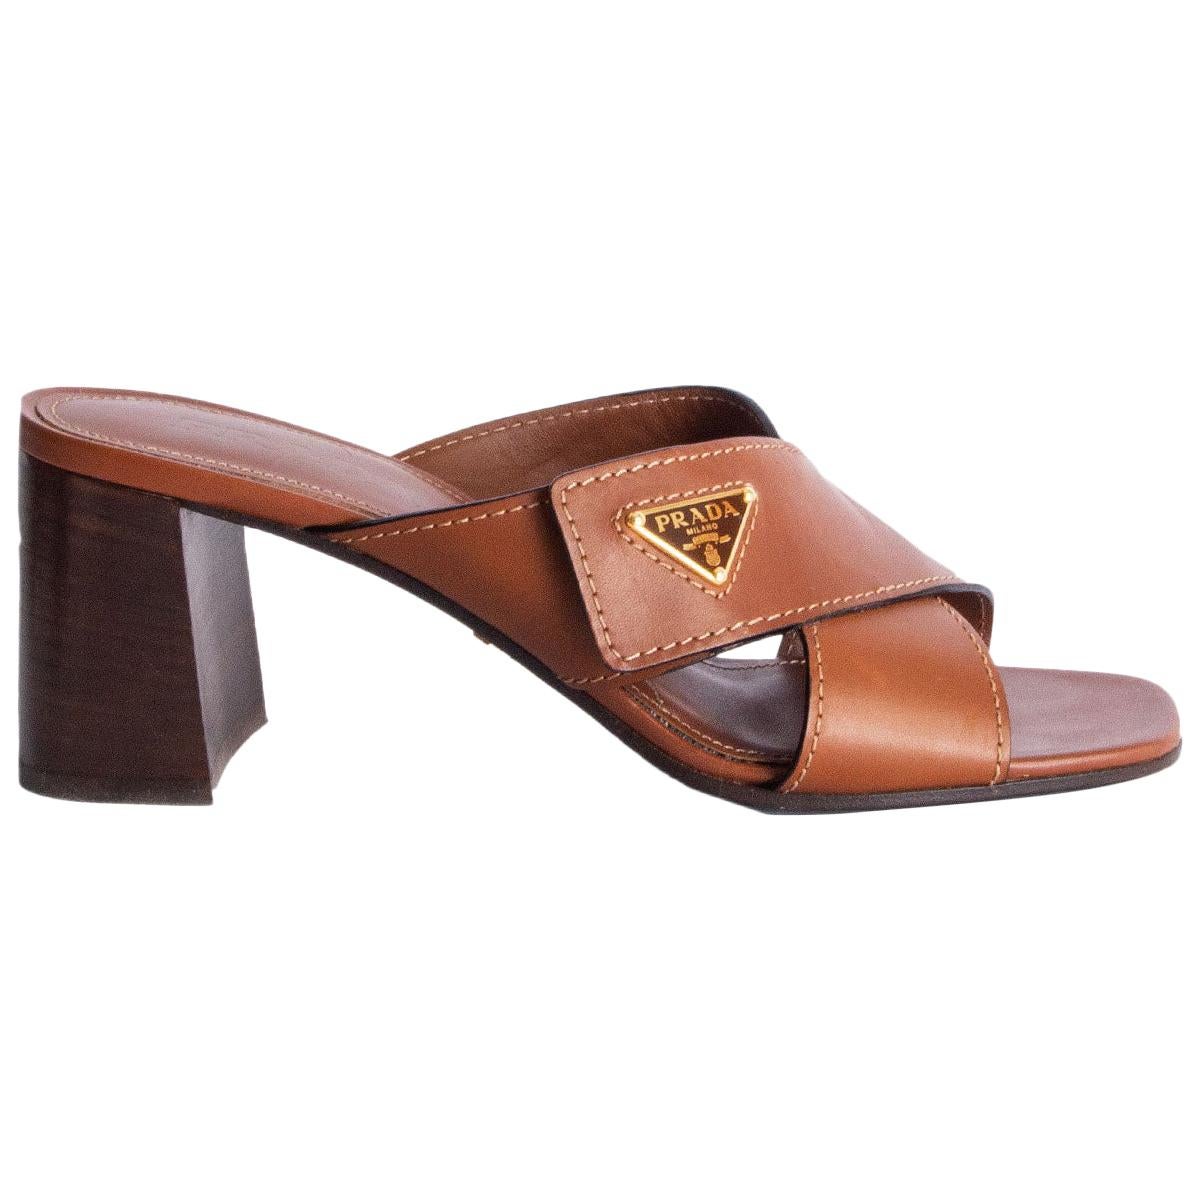 PRADA cognac brown leather CRISS CROSS BLOCK HEEL Sandals Shoes 39.5